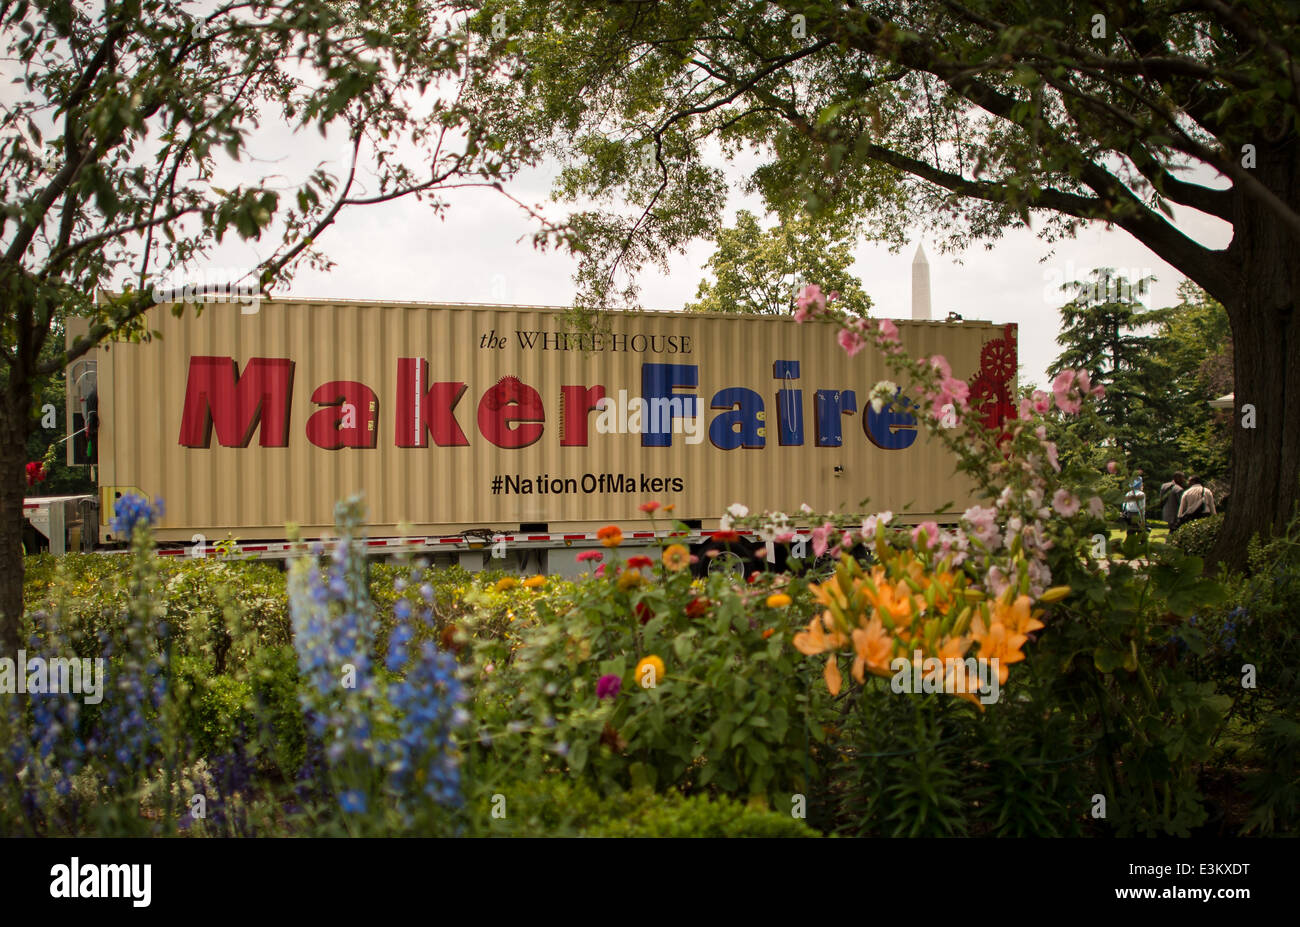 Weiße Haus Maker Faire Stockfoto